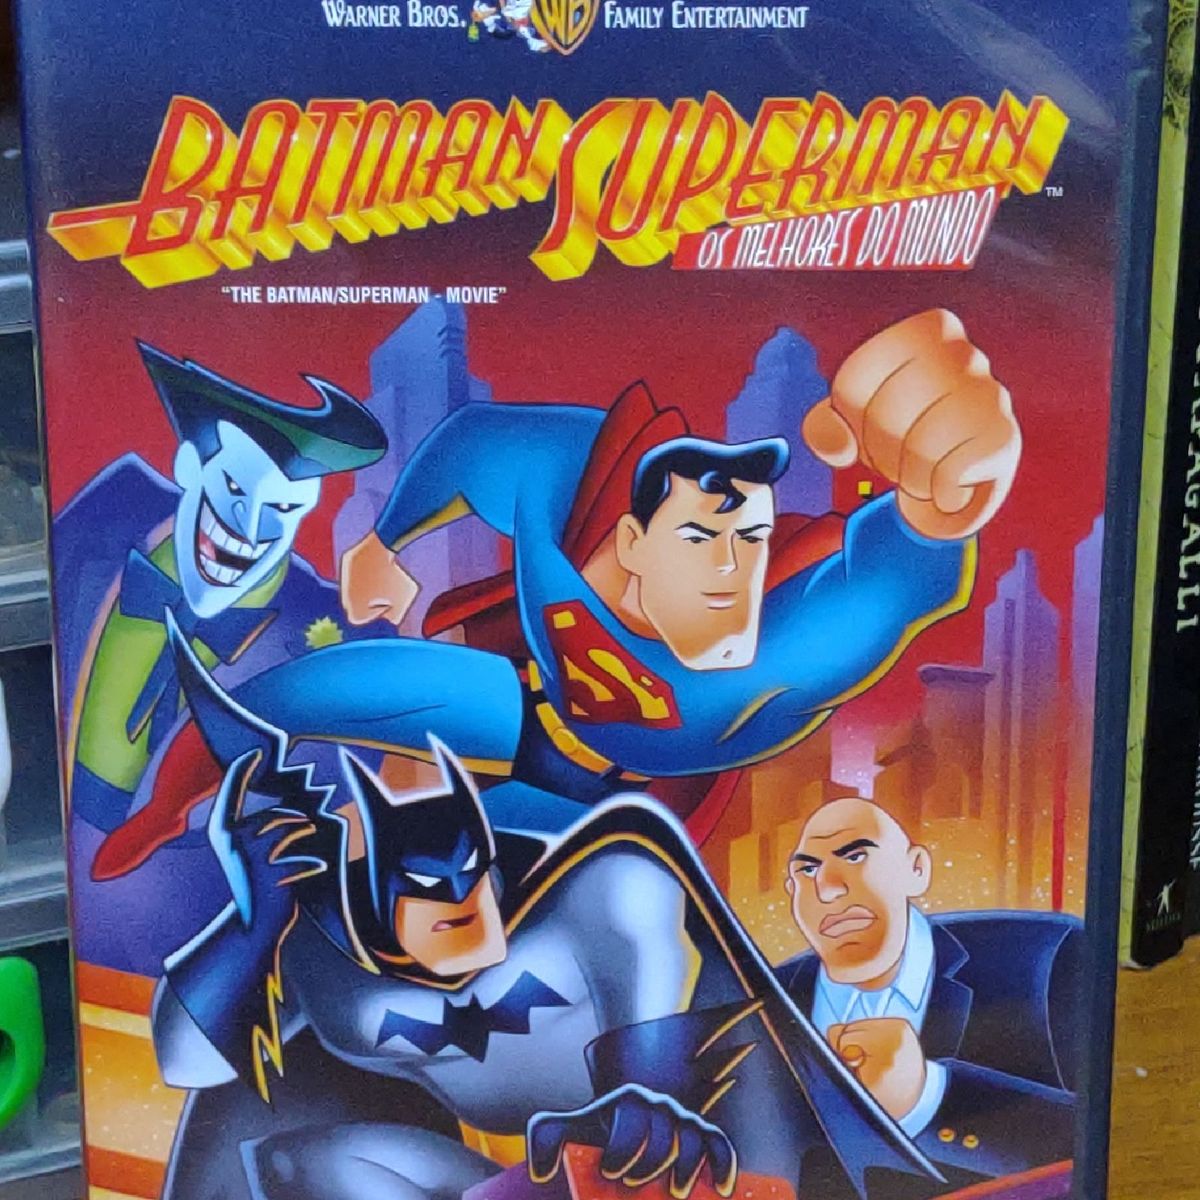 Batman Superman. Os Melhores do Mundo. Dvd